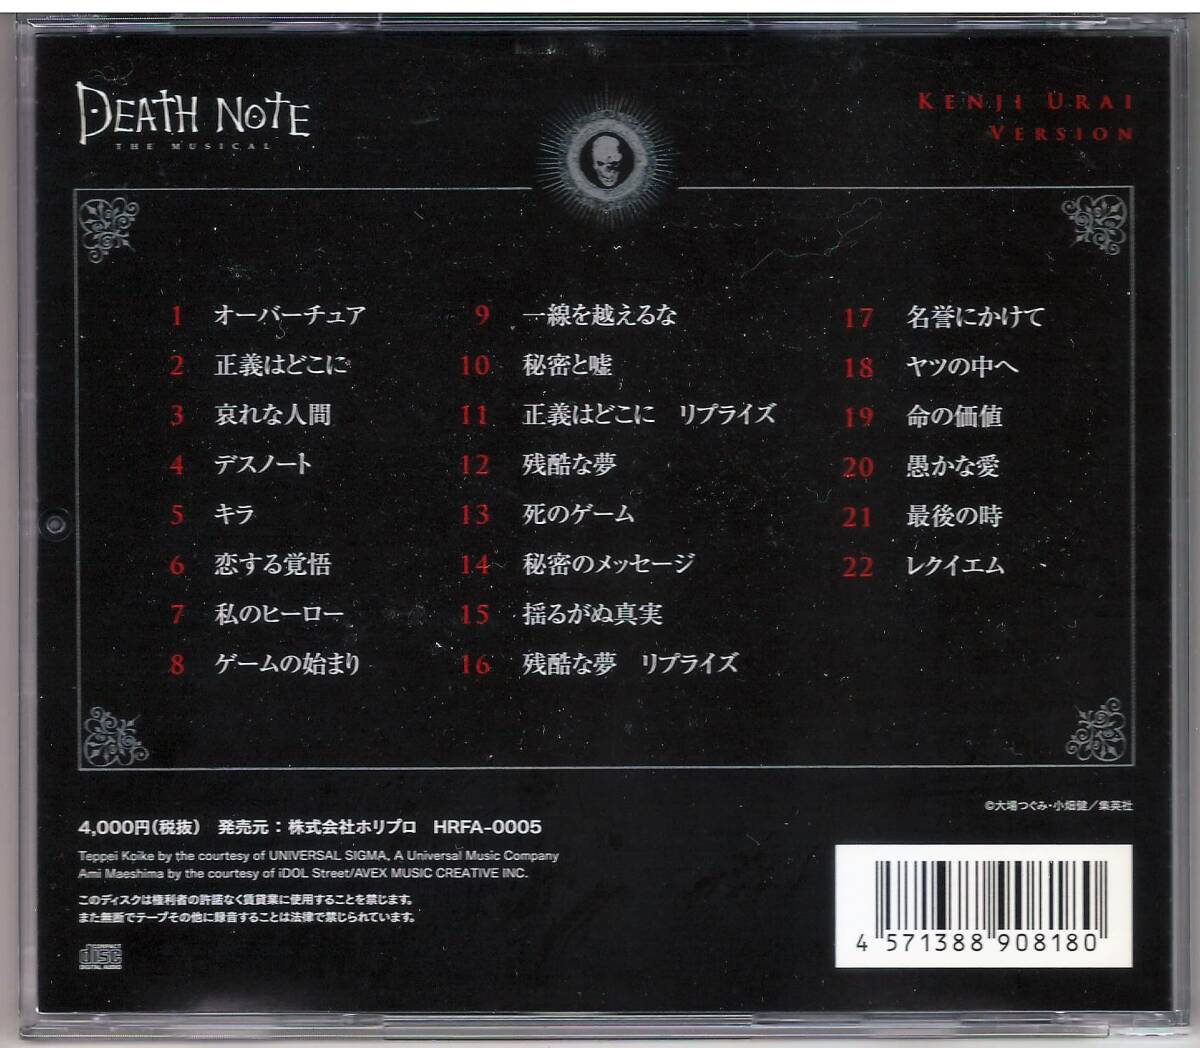 「デスノート THE MUSICAL」ライブ録音盤 CD 浦井健治バージョン 送料込 Death Note ミュージカルの画像2